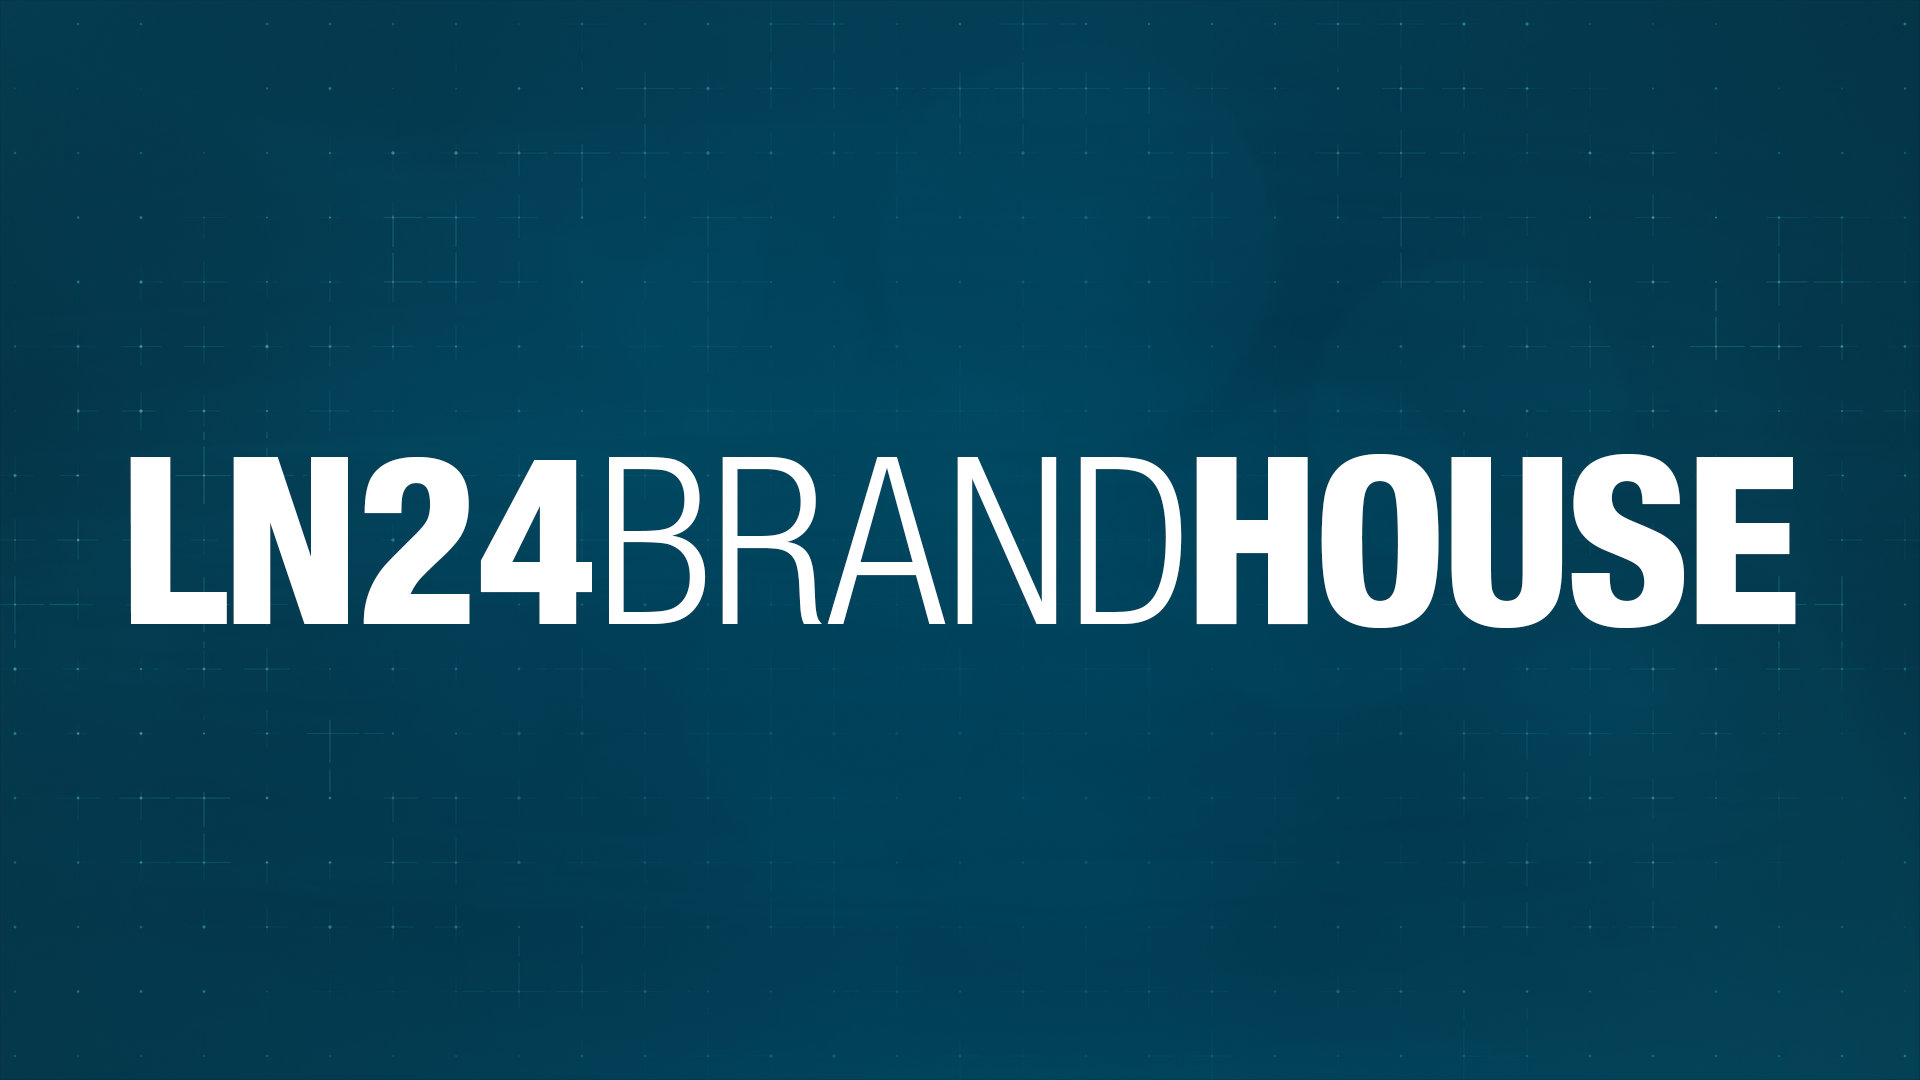 LN24 BrandHouse